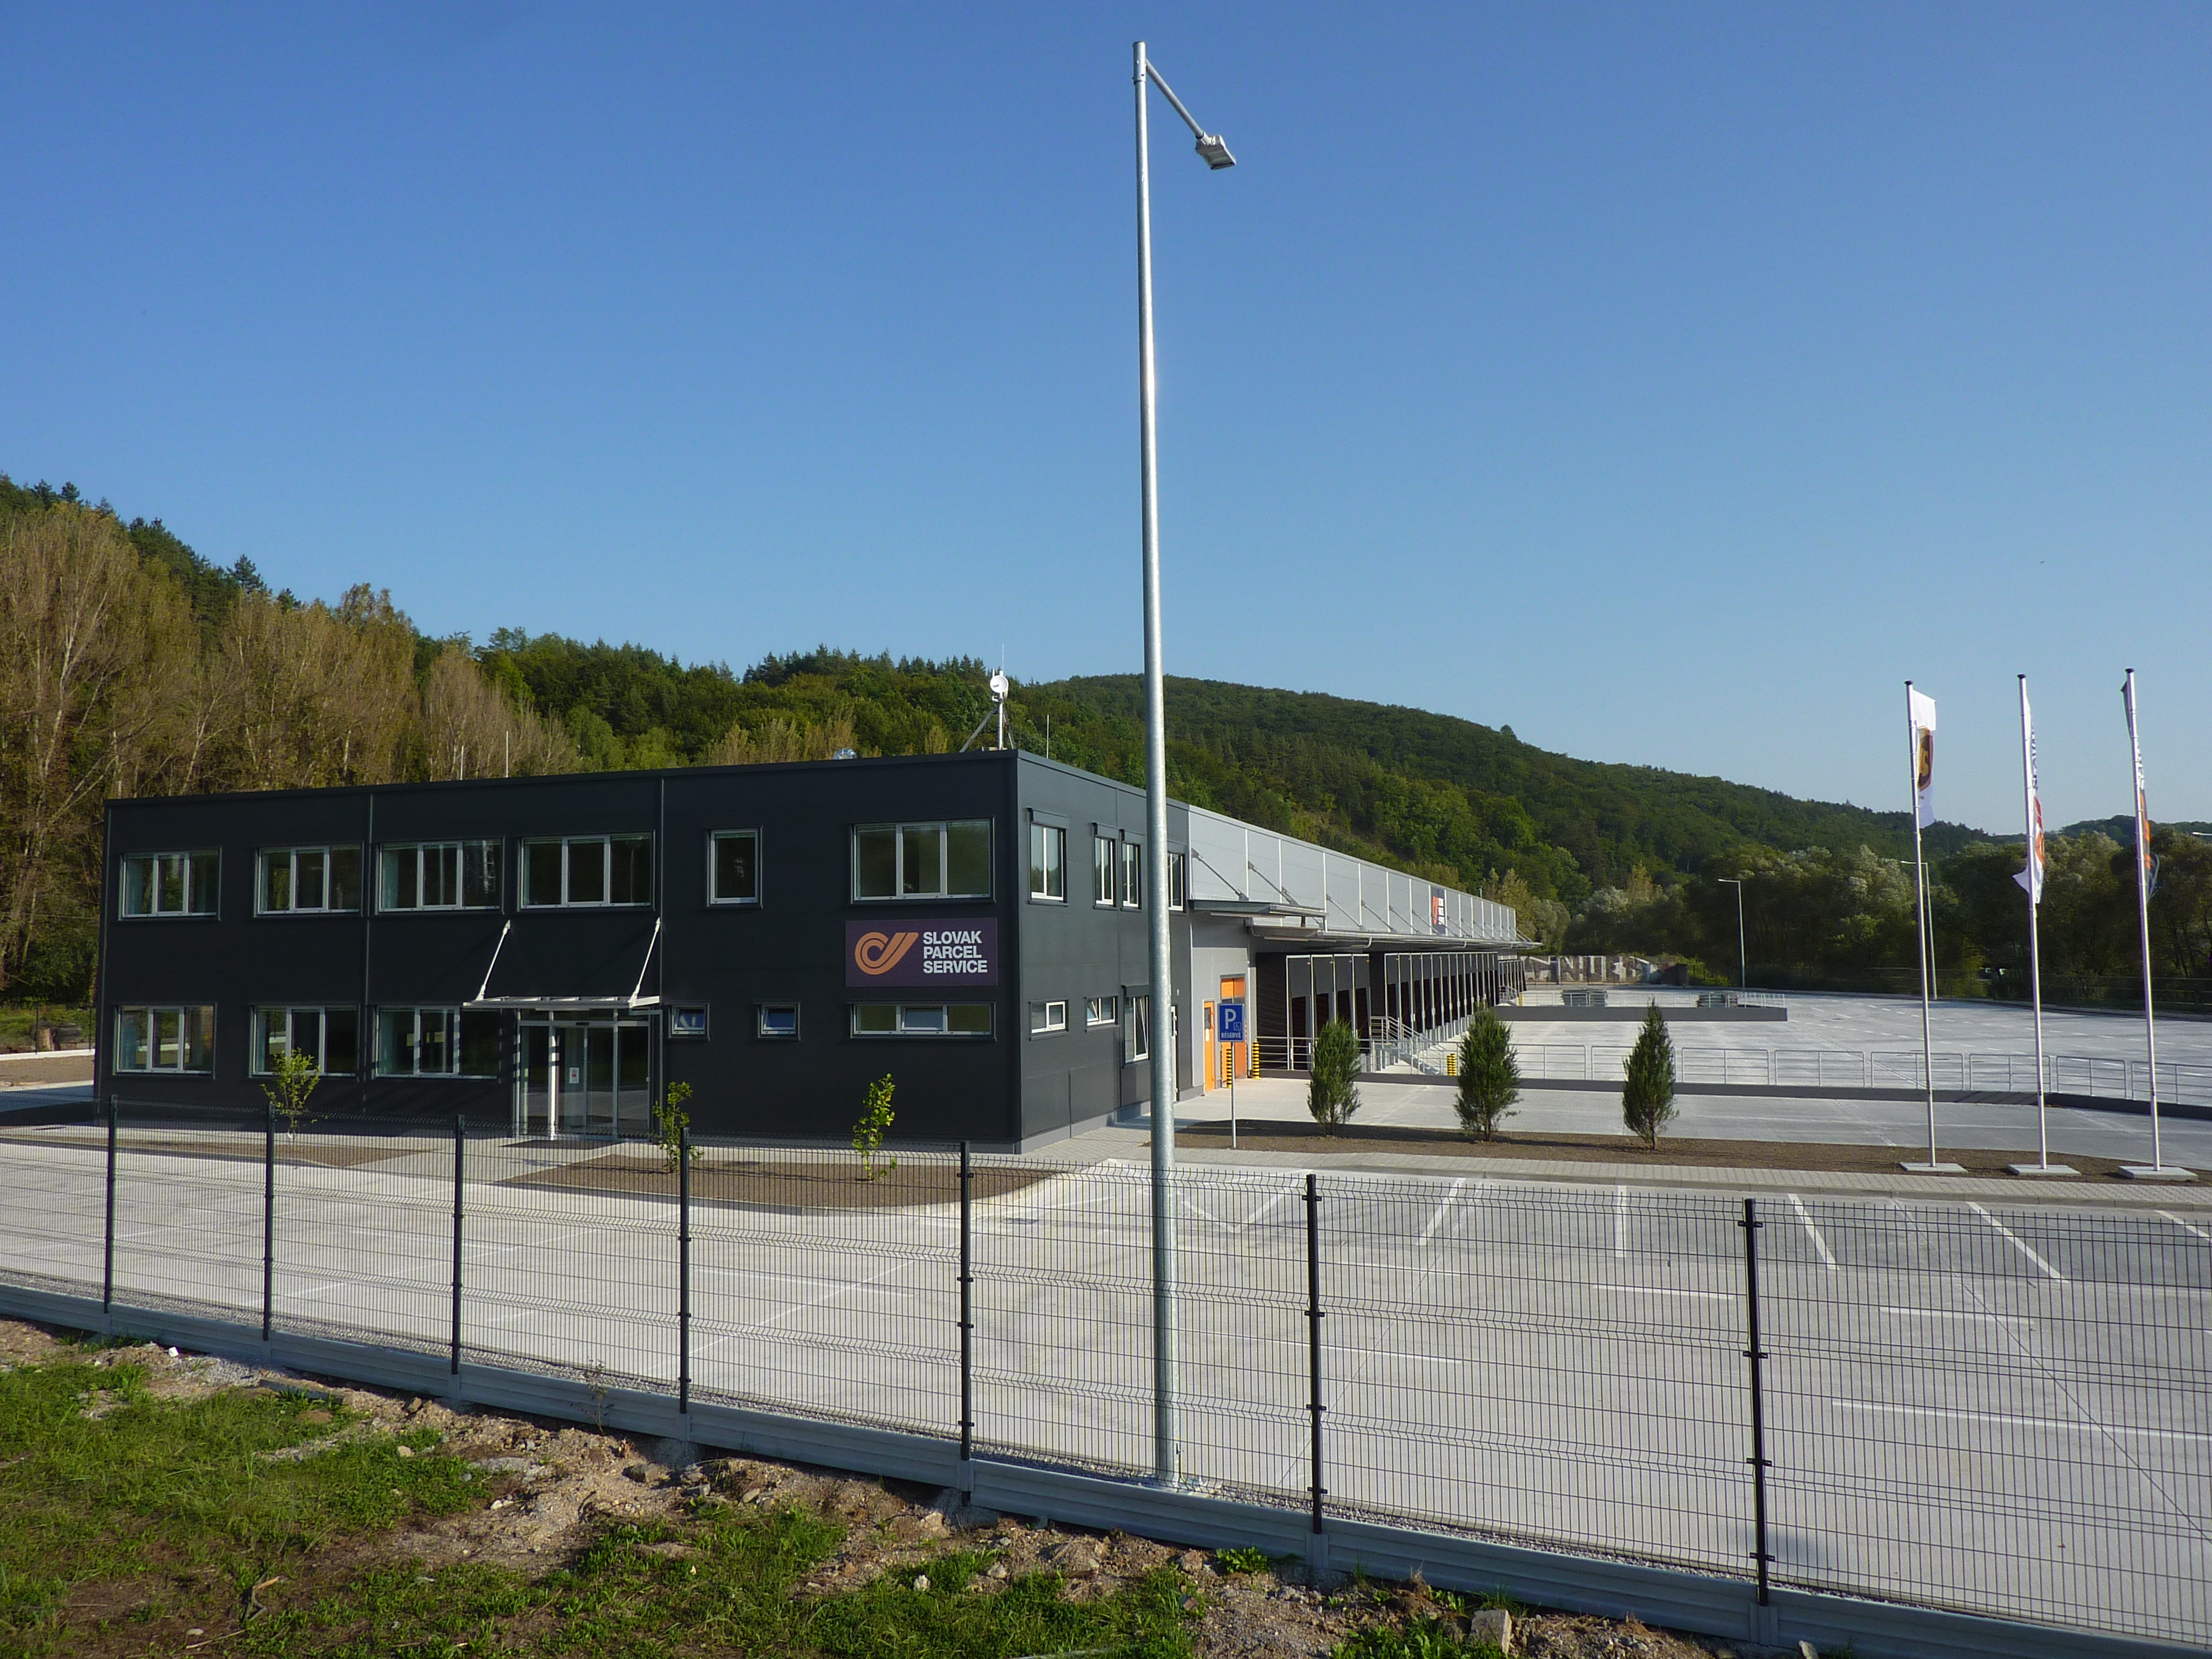 Distribučné centrum SPS Banská Bystrica / logistické areály, sklady - Bygningskonstruksjon